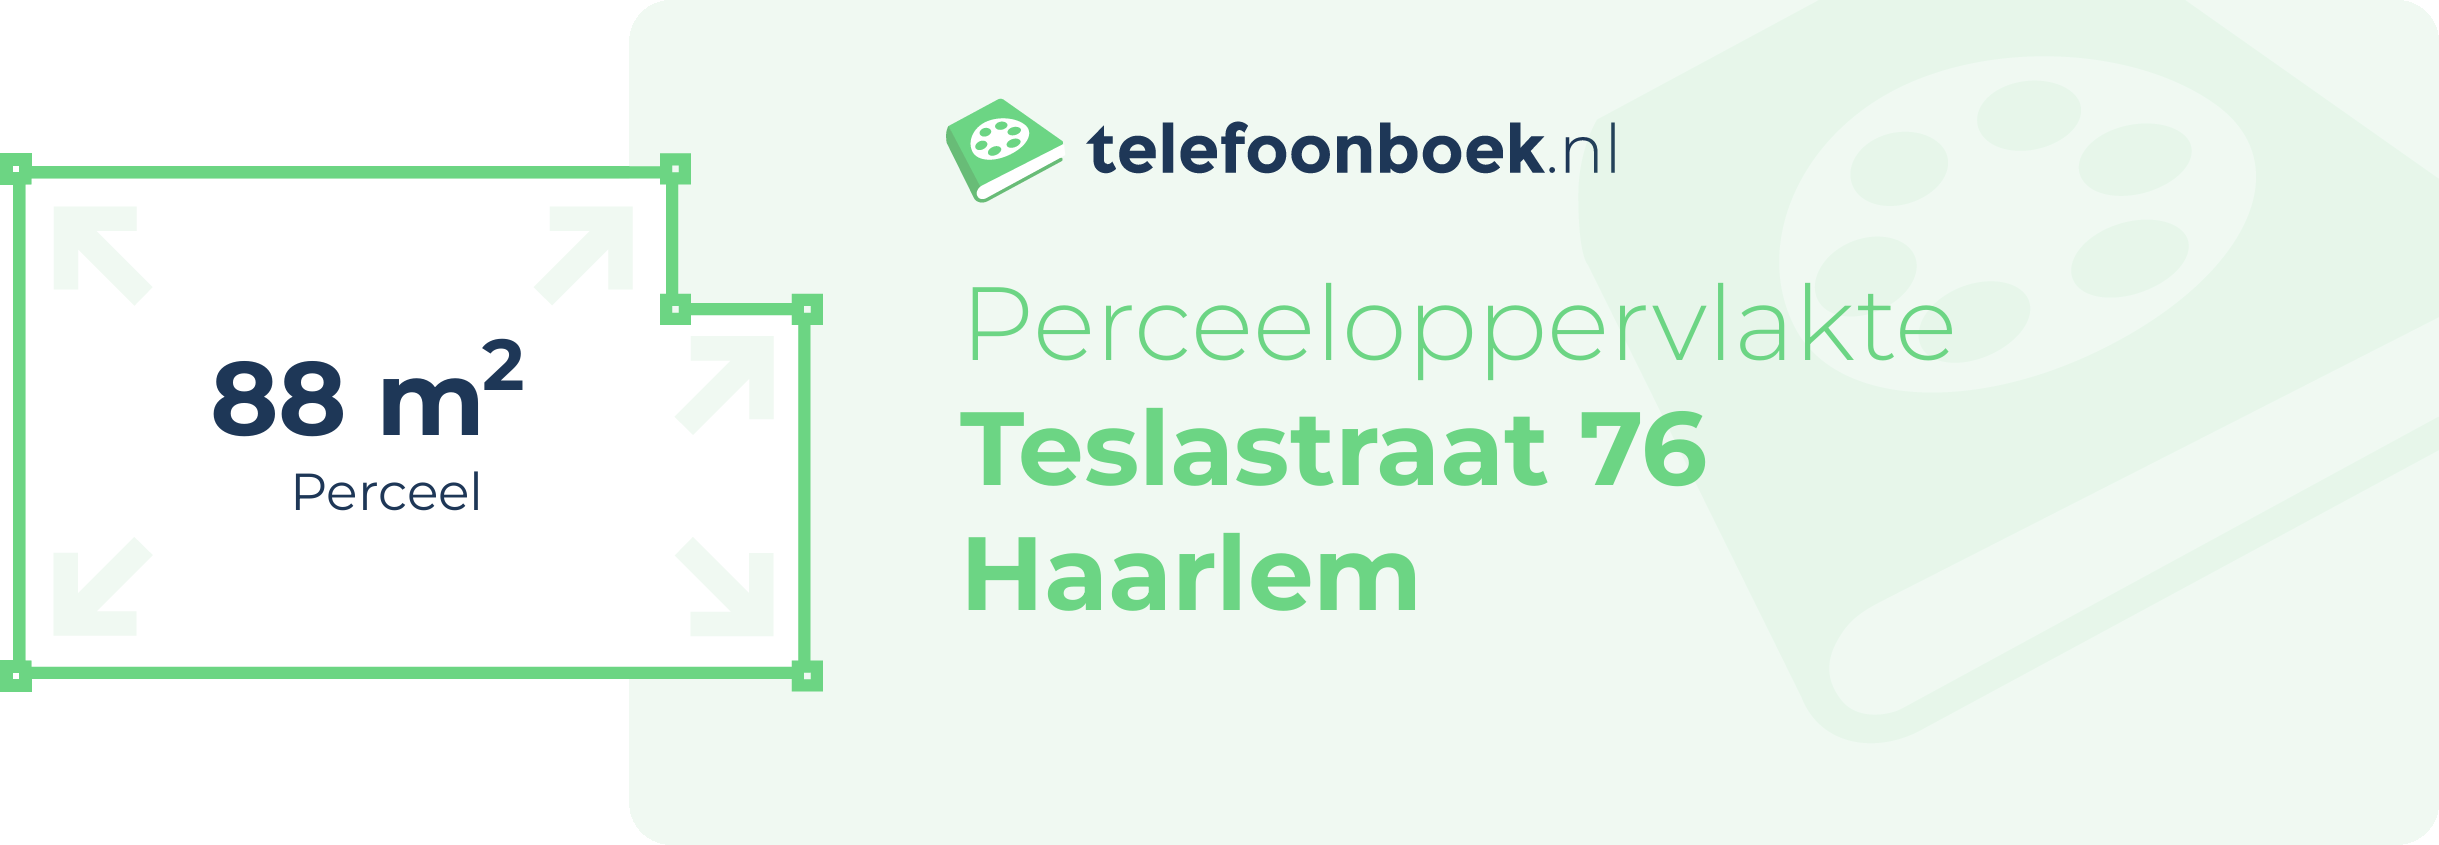 Perceeloppervlakte Teslastraat 76 Haarlem